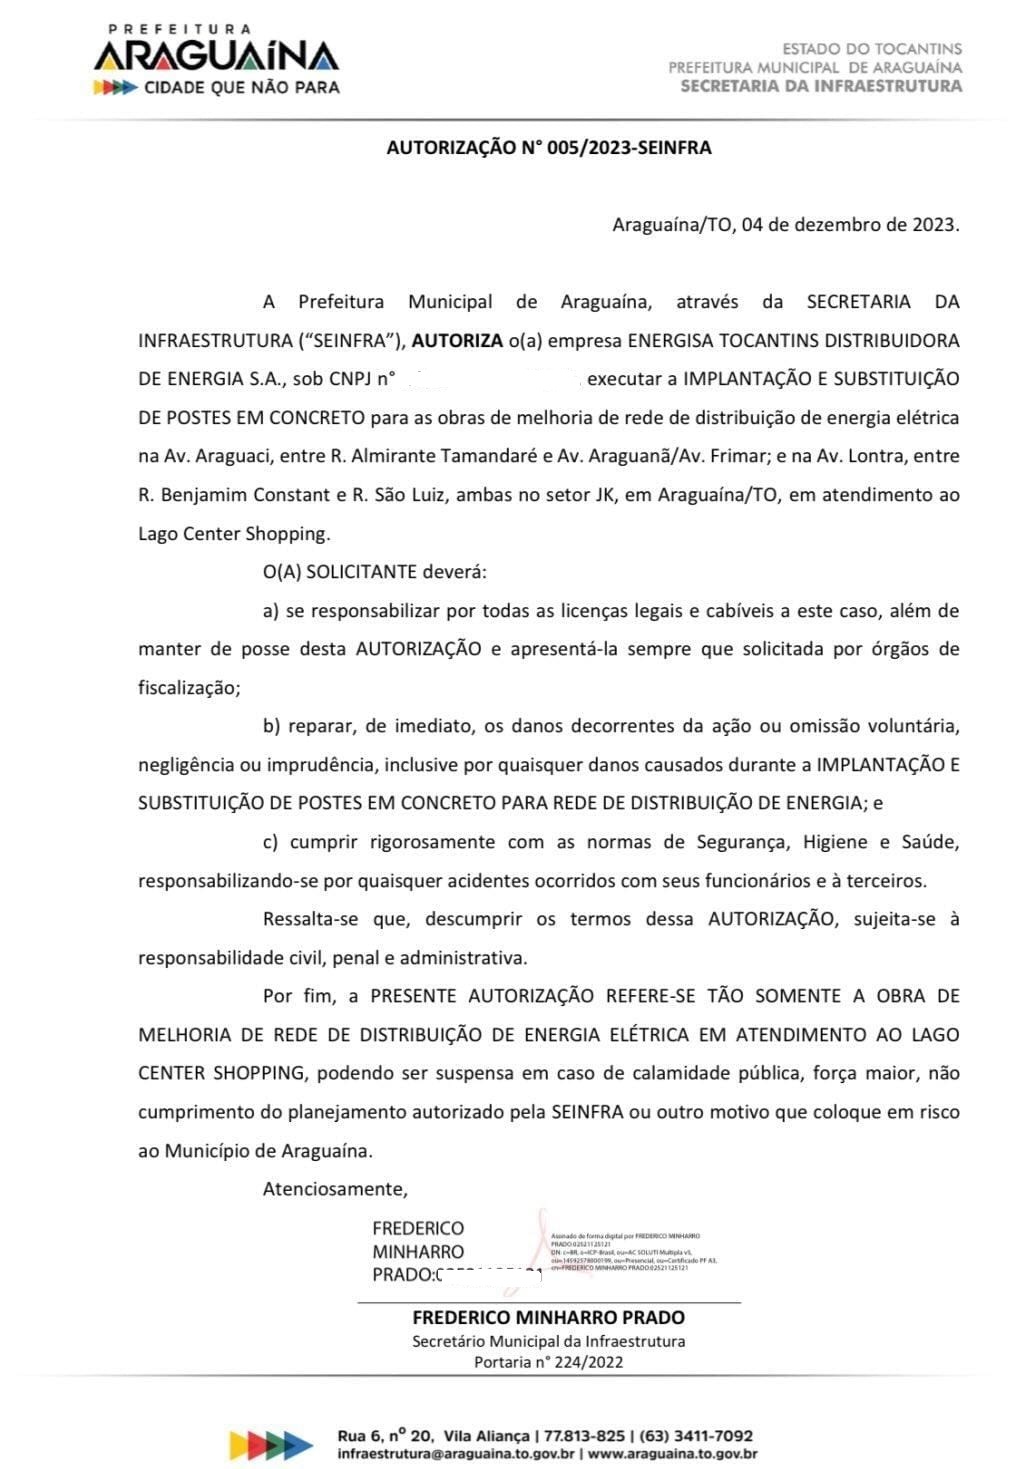 Autorização dada pela Prefeitura de Araguaína para execução da obra